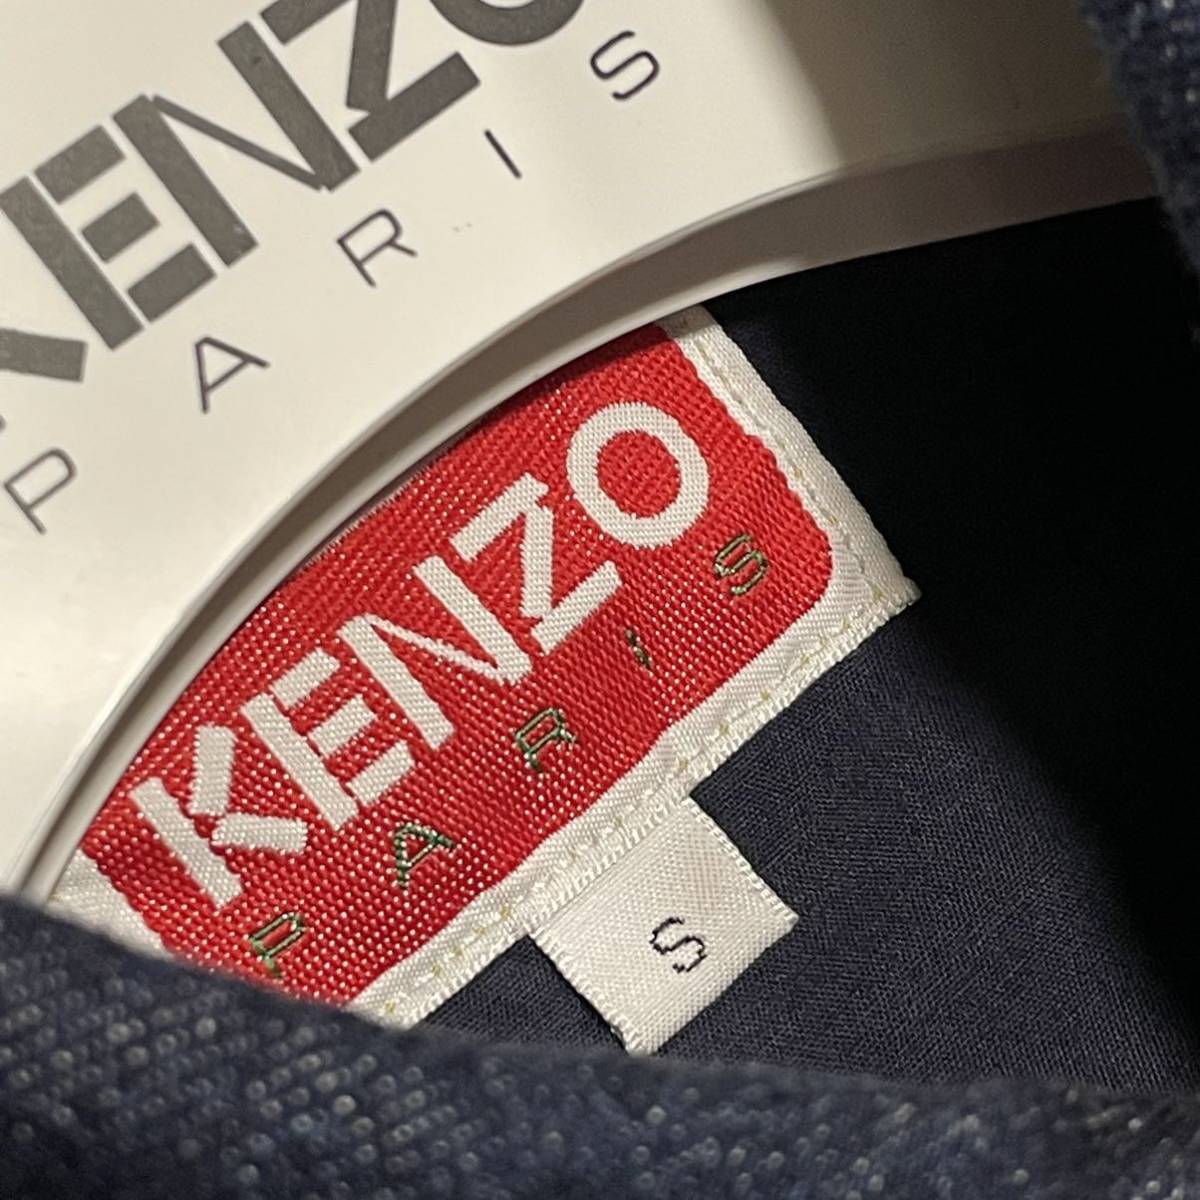  стандартный товар прекрасный товар KENZO Kenzo индиго Denim рубашка с длинным рукавом Western внешний tops жакет S